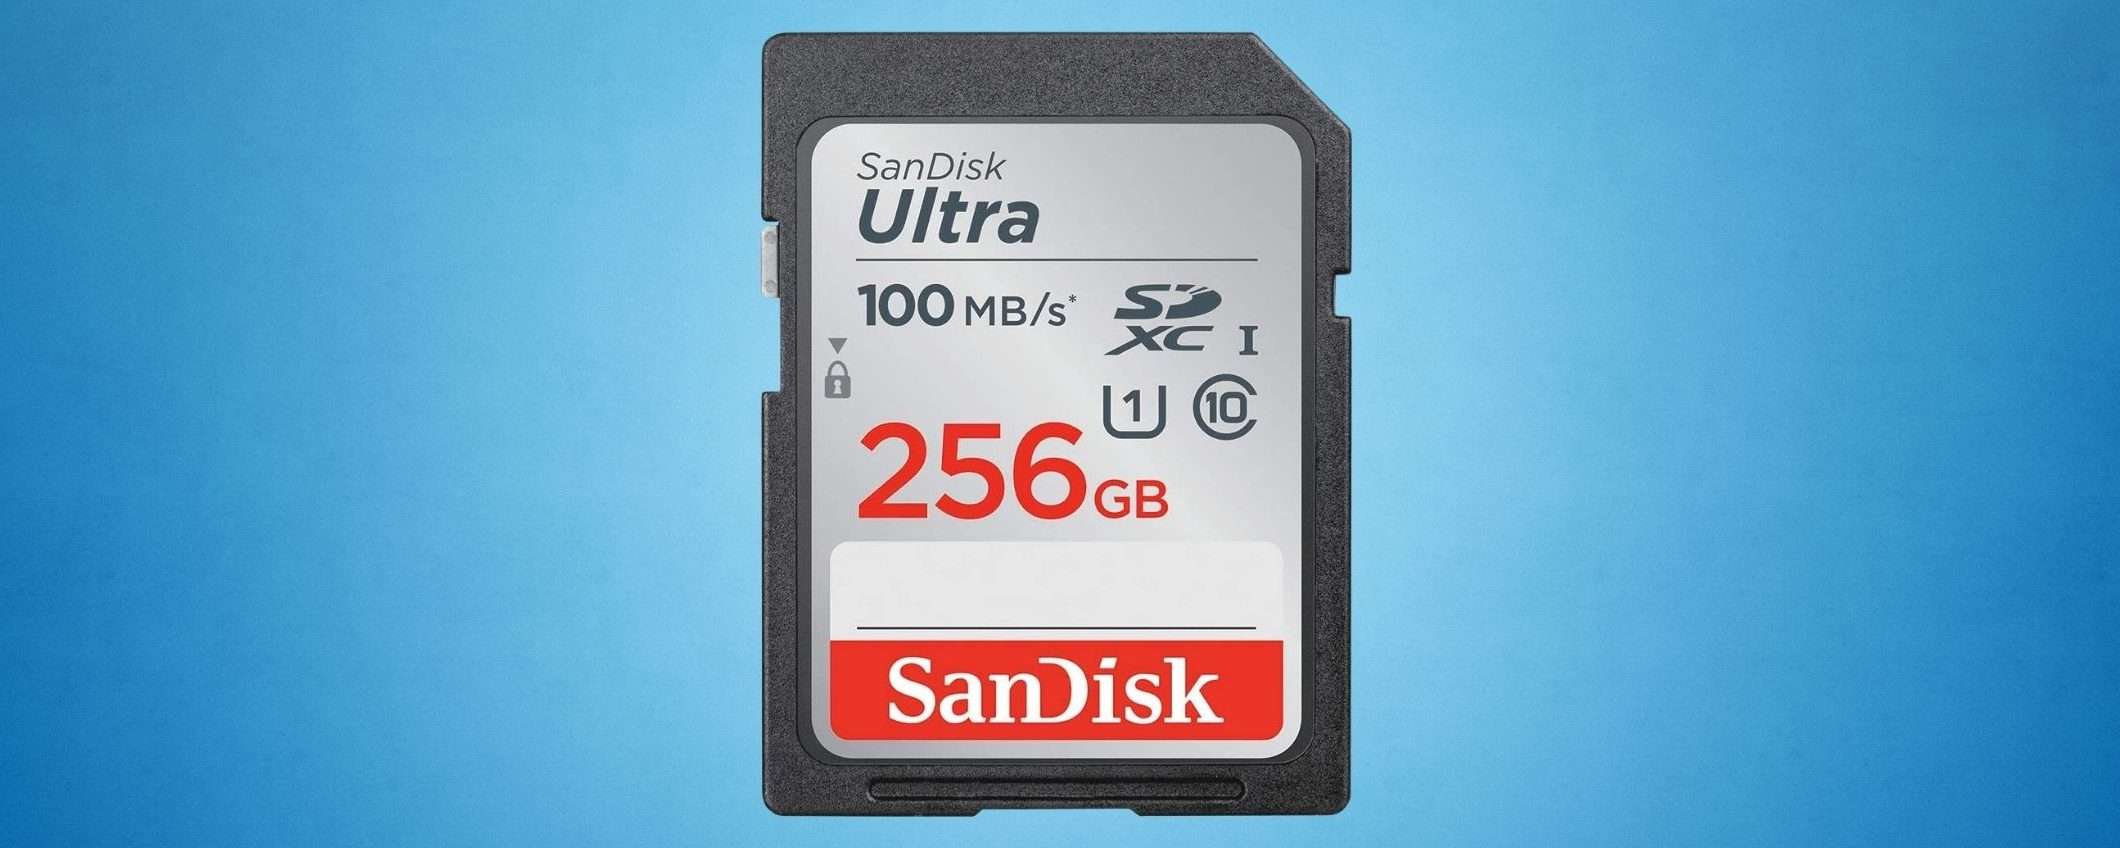 Scheda SD da 256 GB: più spazio per foto e video in super sconto